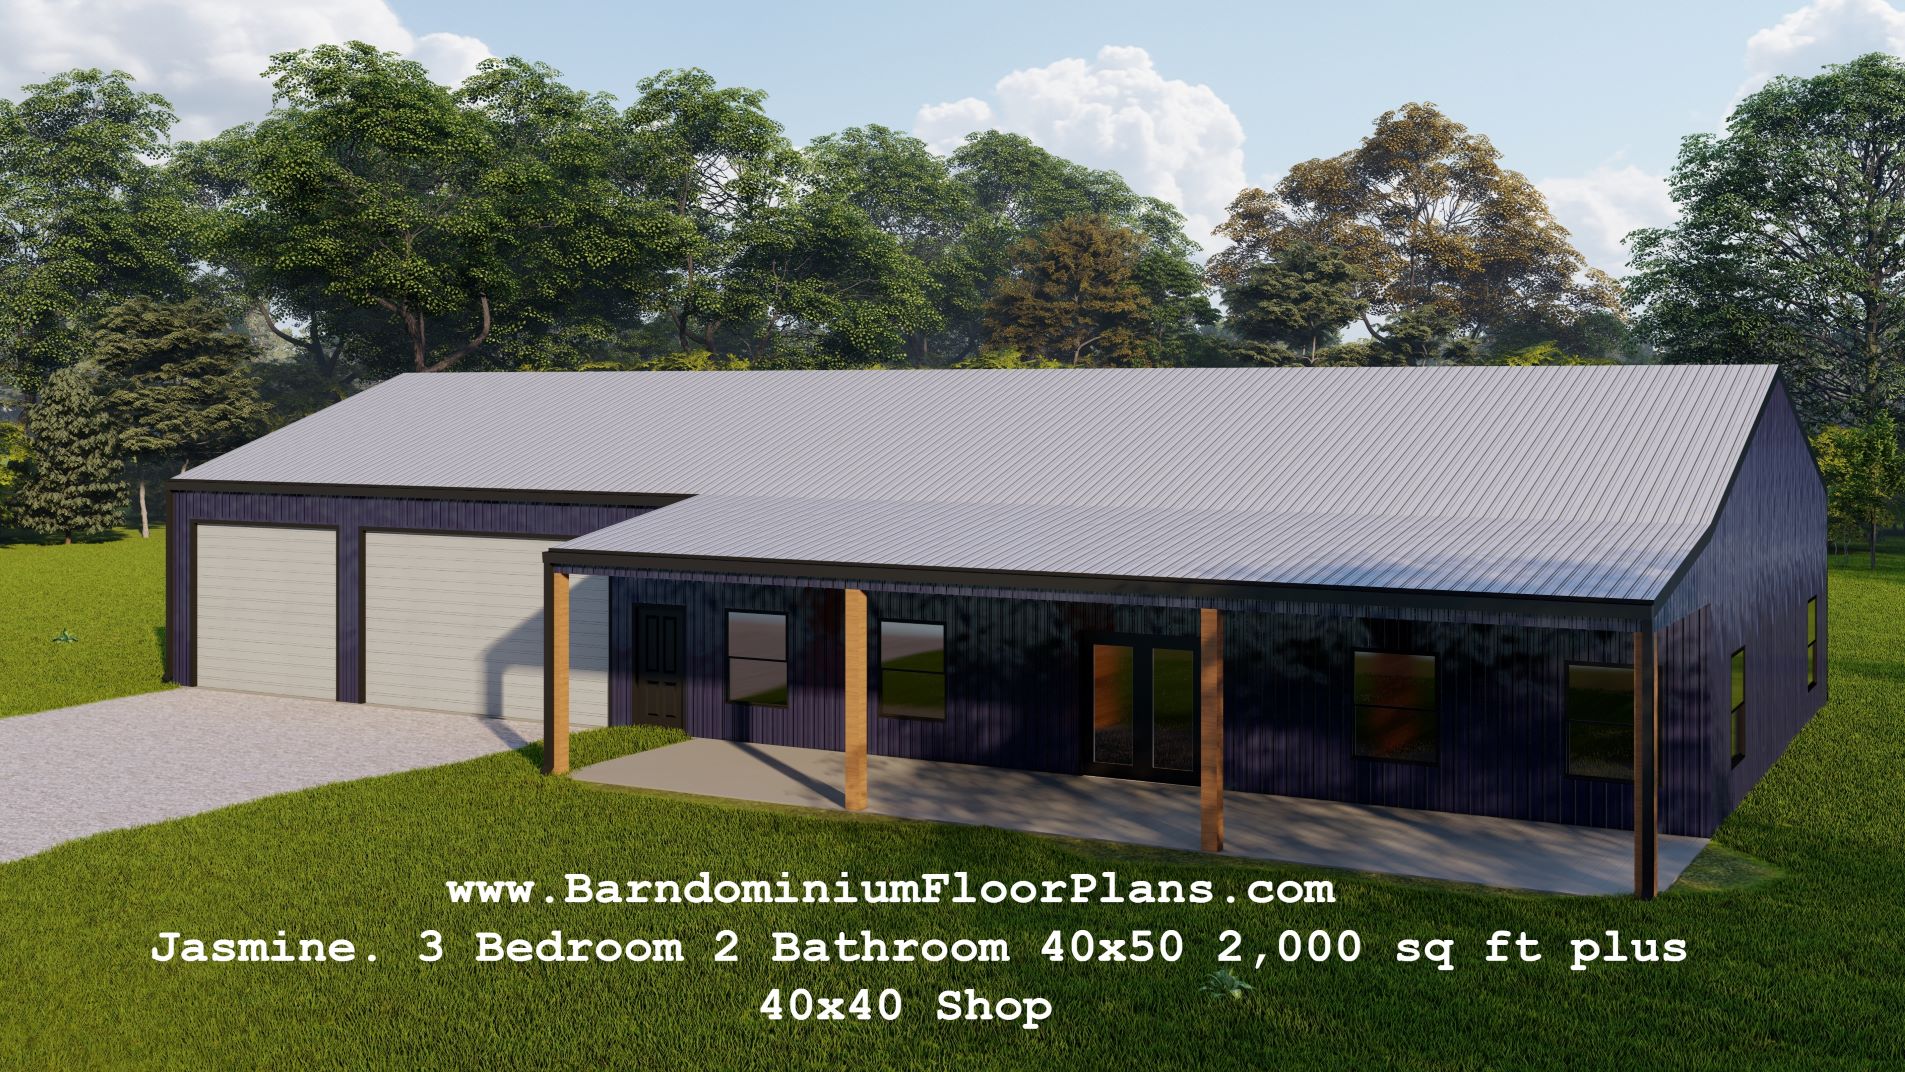 Jasmine-3Bedroom-2Bathroom-40x50-2000-sqft-plus-40x40-Shop-3drender-website